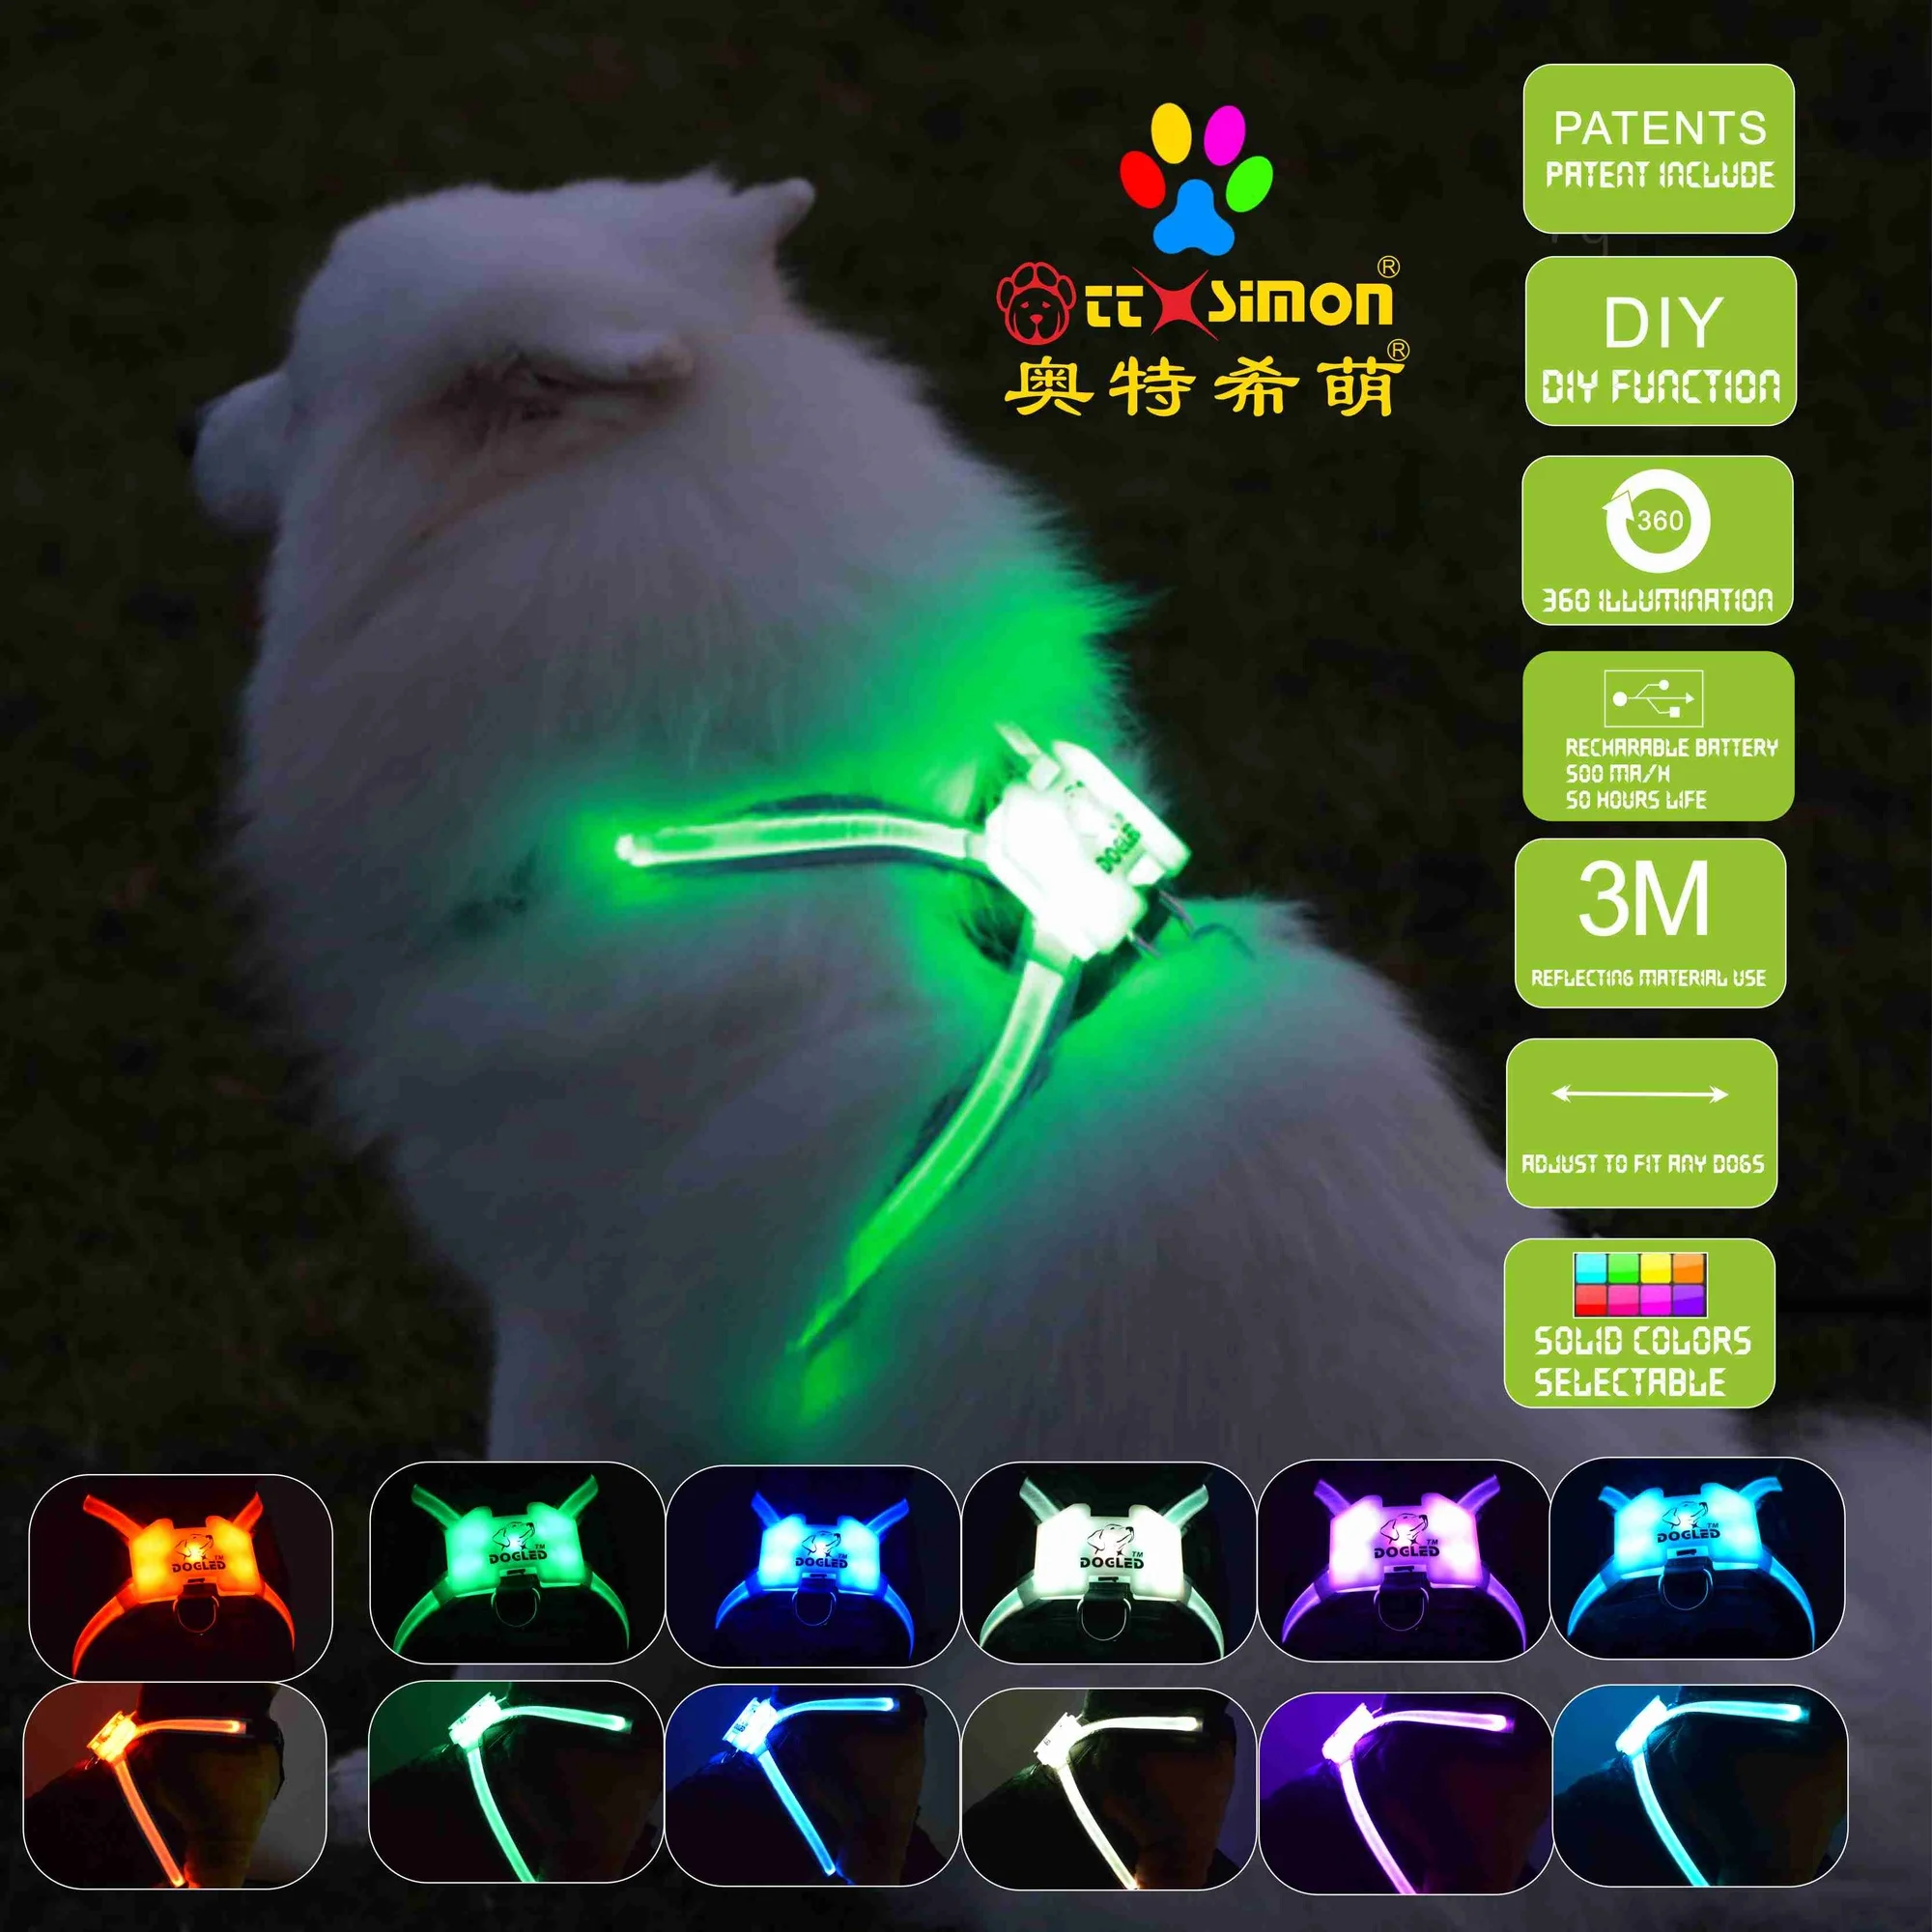 

Новейший 2022 ходячий CC Simon светящийся USB светодиодный воротник для щенка жилет для домашних животных